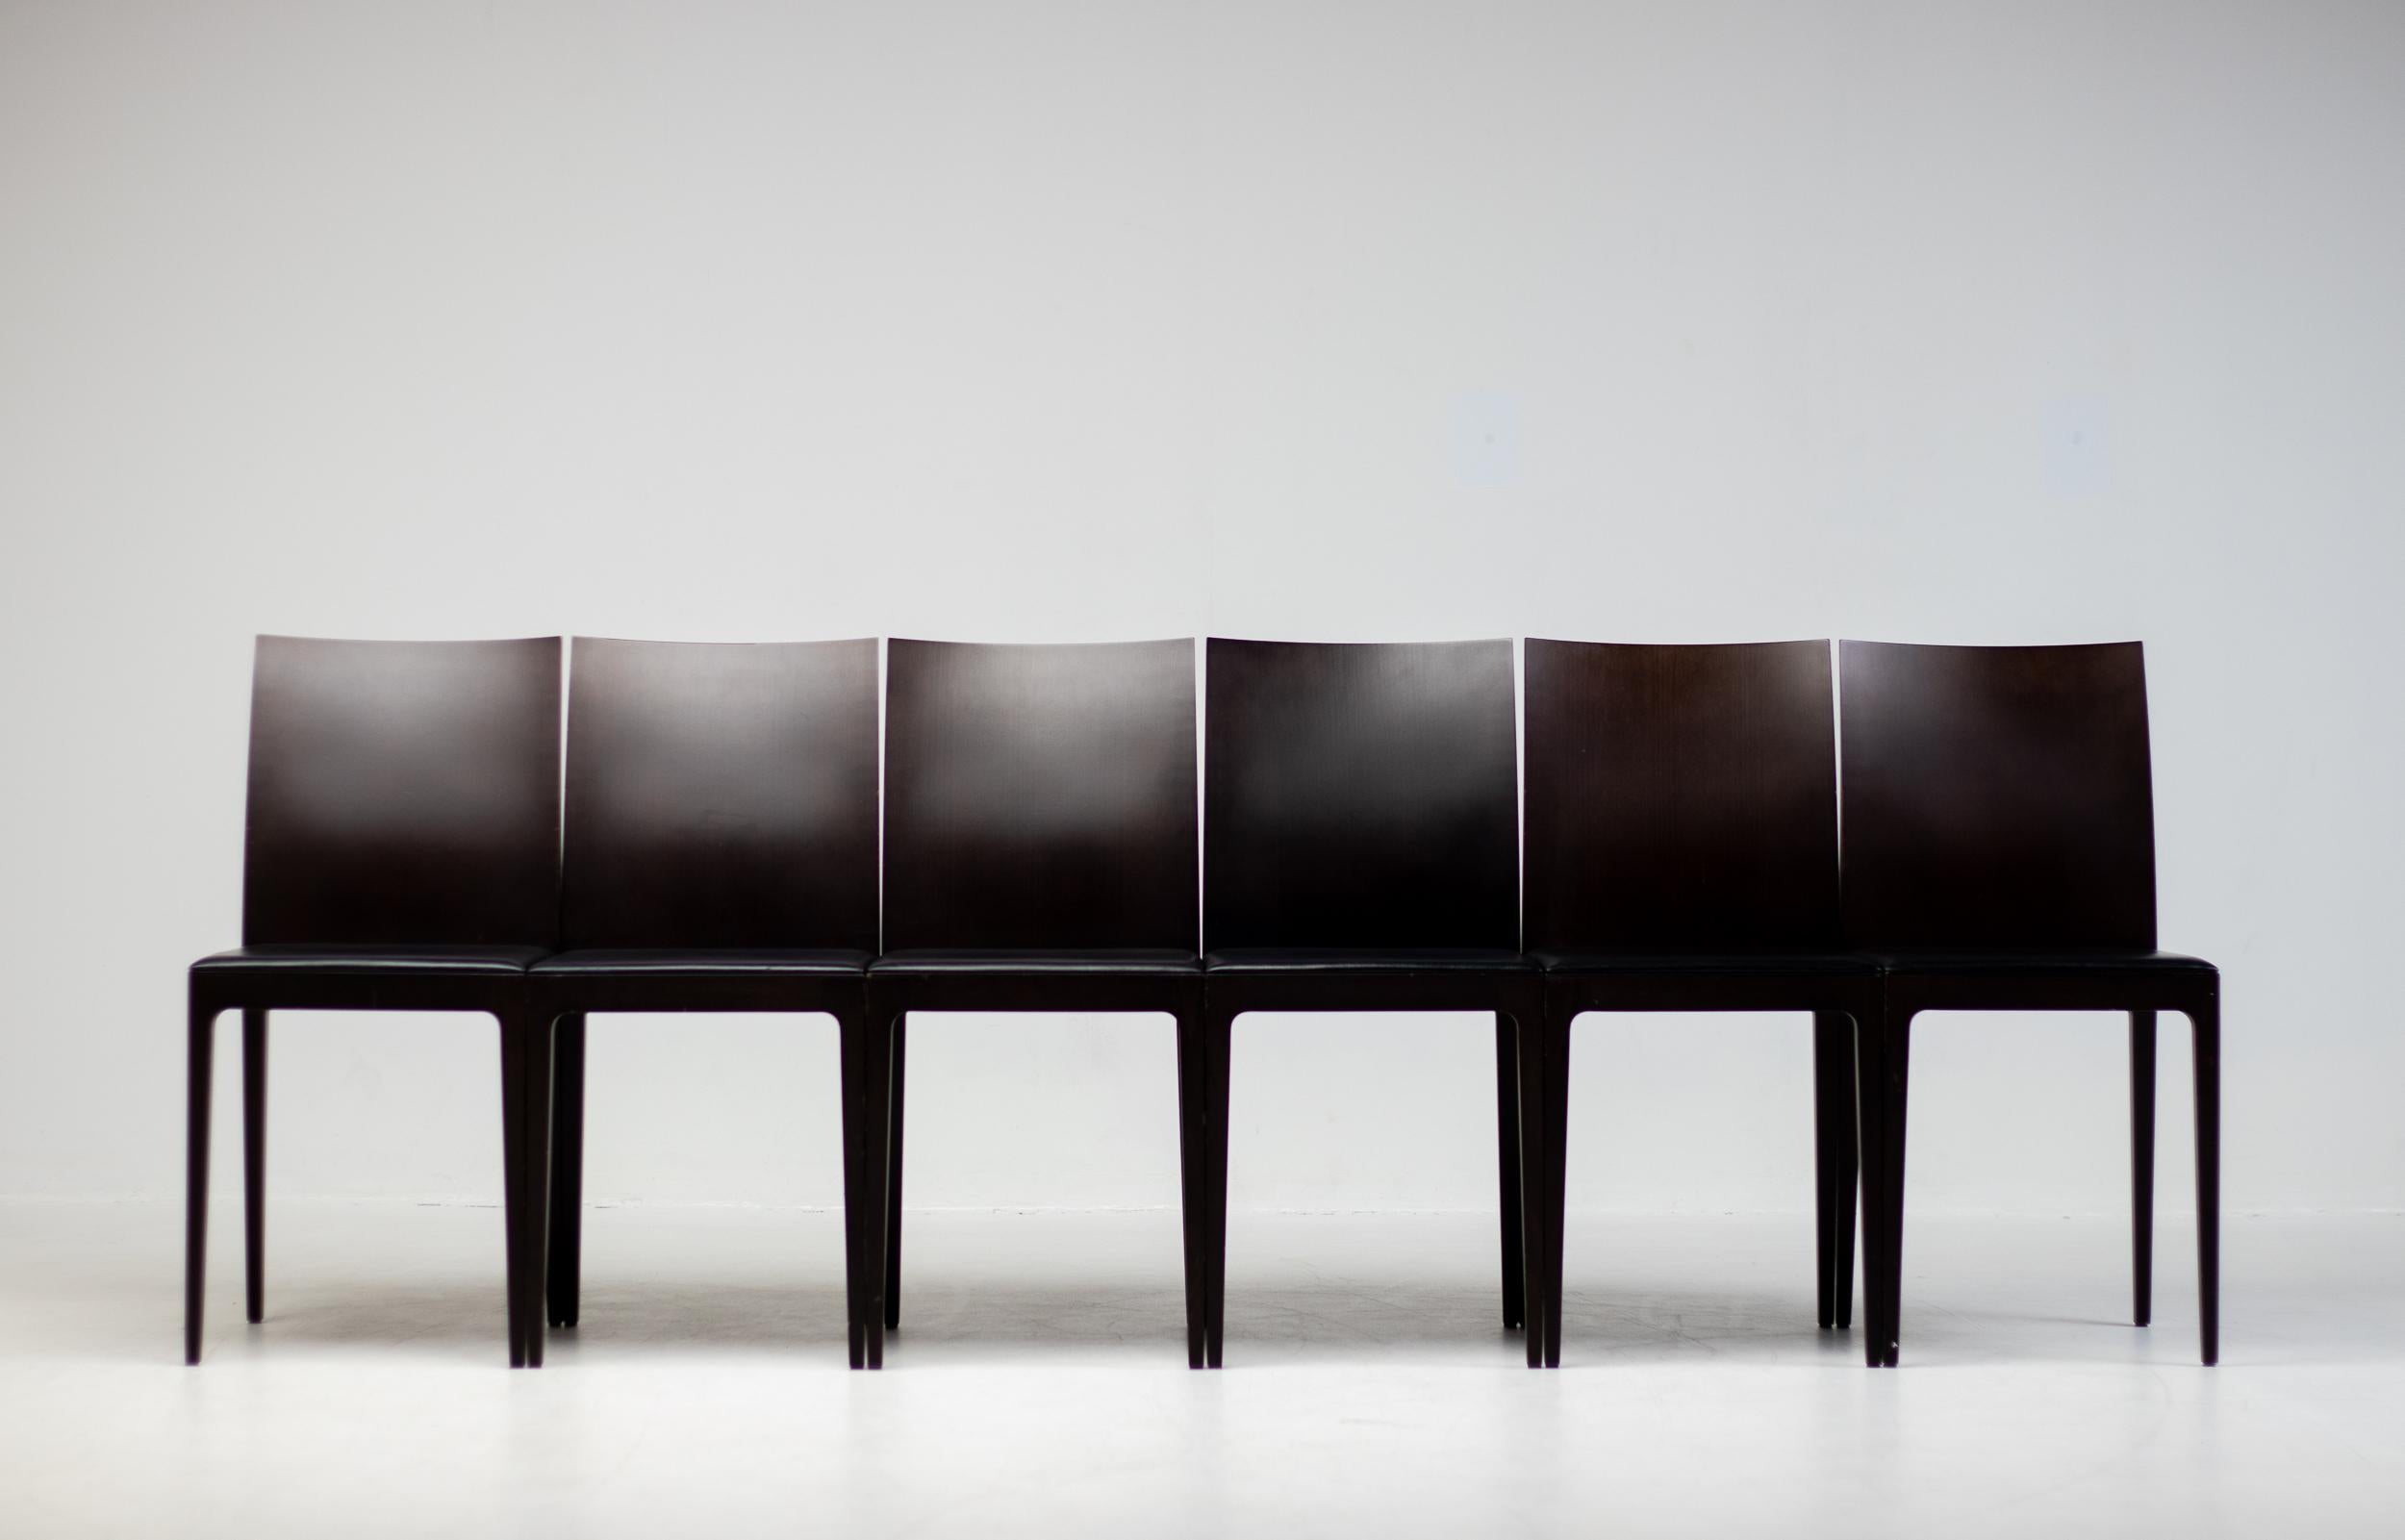 Conjunto de seis sillas de comedor Anna R diseñadas por Ludovica y Roberto Palomba para Crassevig, Italia. 
Estas sillas tienen un armazón de madera maciza marrón oscuro con respaldo de doble panel y un panel de asiento tapizado en piel negra. Marca